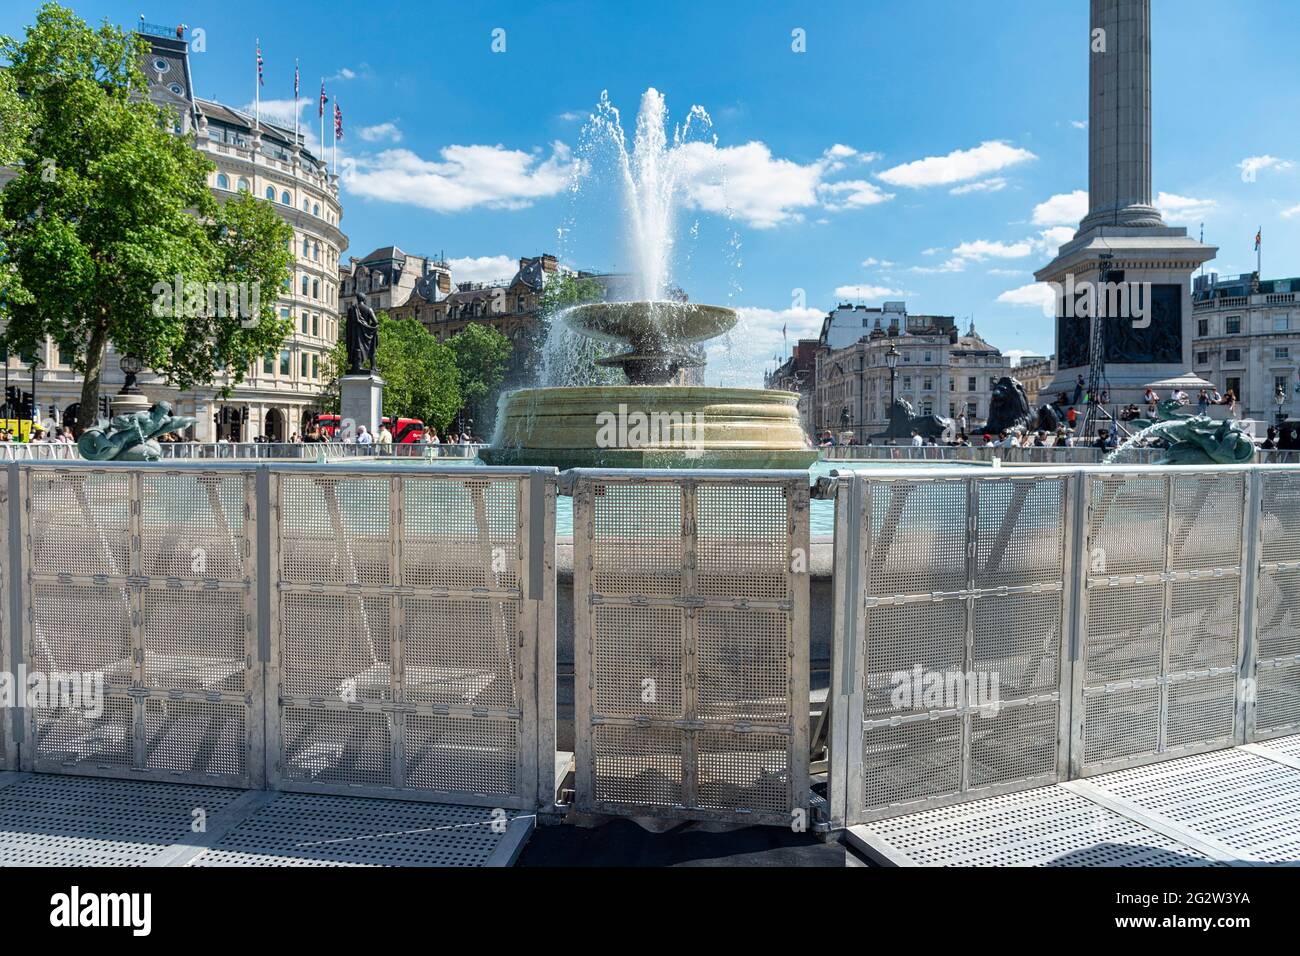 Des barrières de foule autour des fontaines de Trafalgar Square se poursuivent alors que la construction d'une nouvelle zone des fans se poursuit à Trafalgar Square, avant l'inauguration de l'Angleterre dans le Championnat d'Europe de football de l'UEFA contre la Croatie en 2020. Les fans pourront regarder des matchs de l'Angleterre sur un écran géant sur la place. Banque D'Images